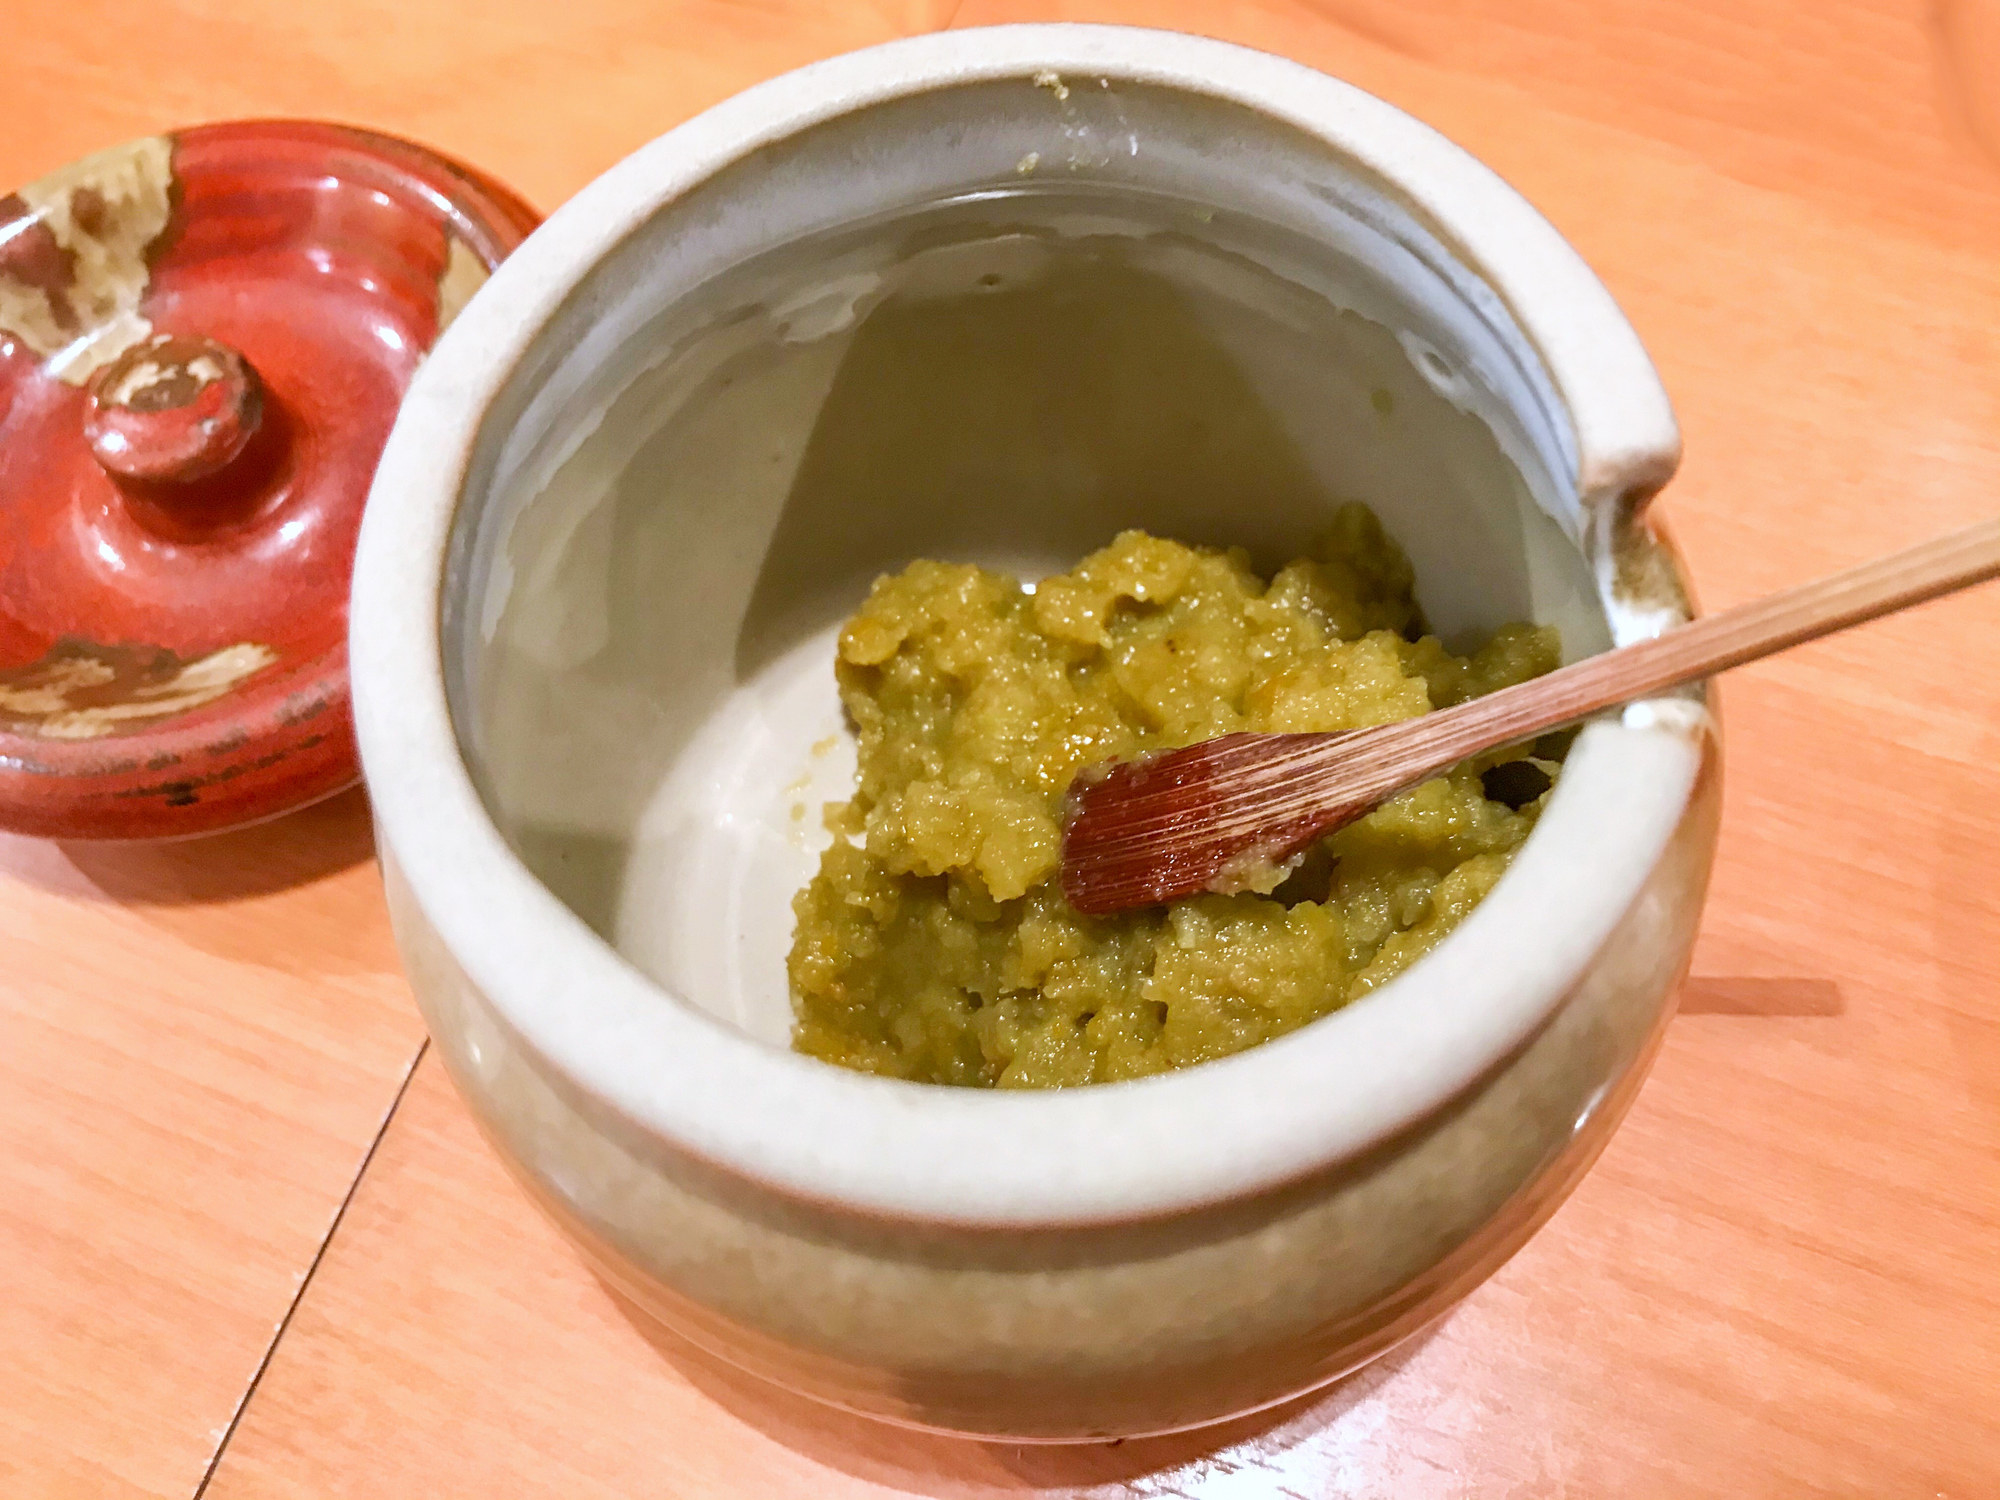 Yuzu kosho in a small bowl.